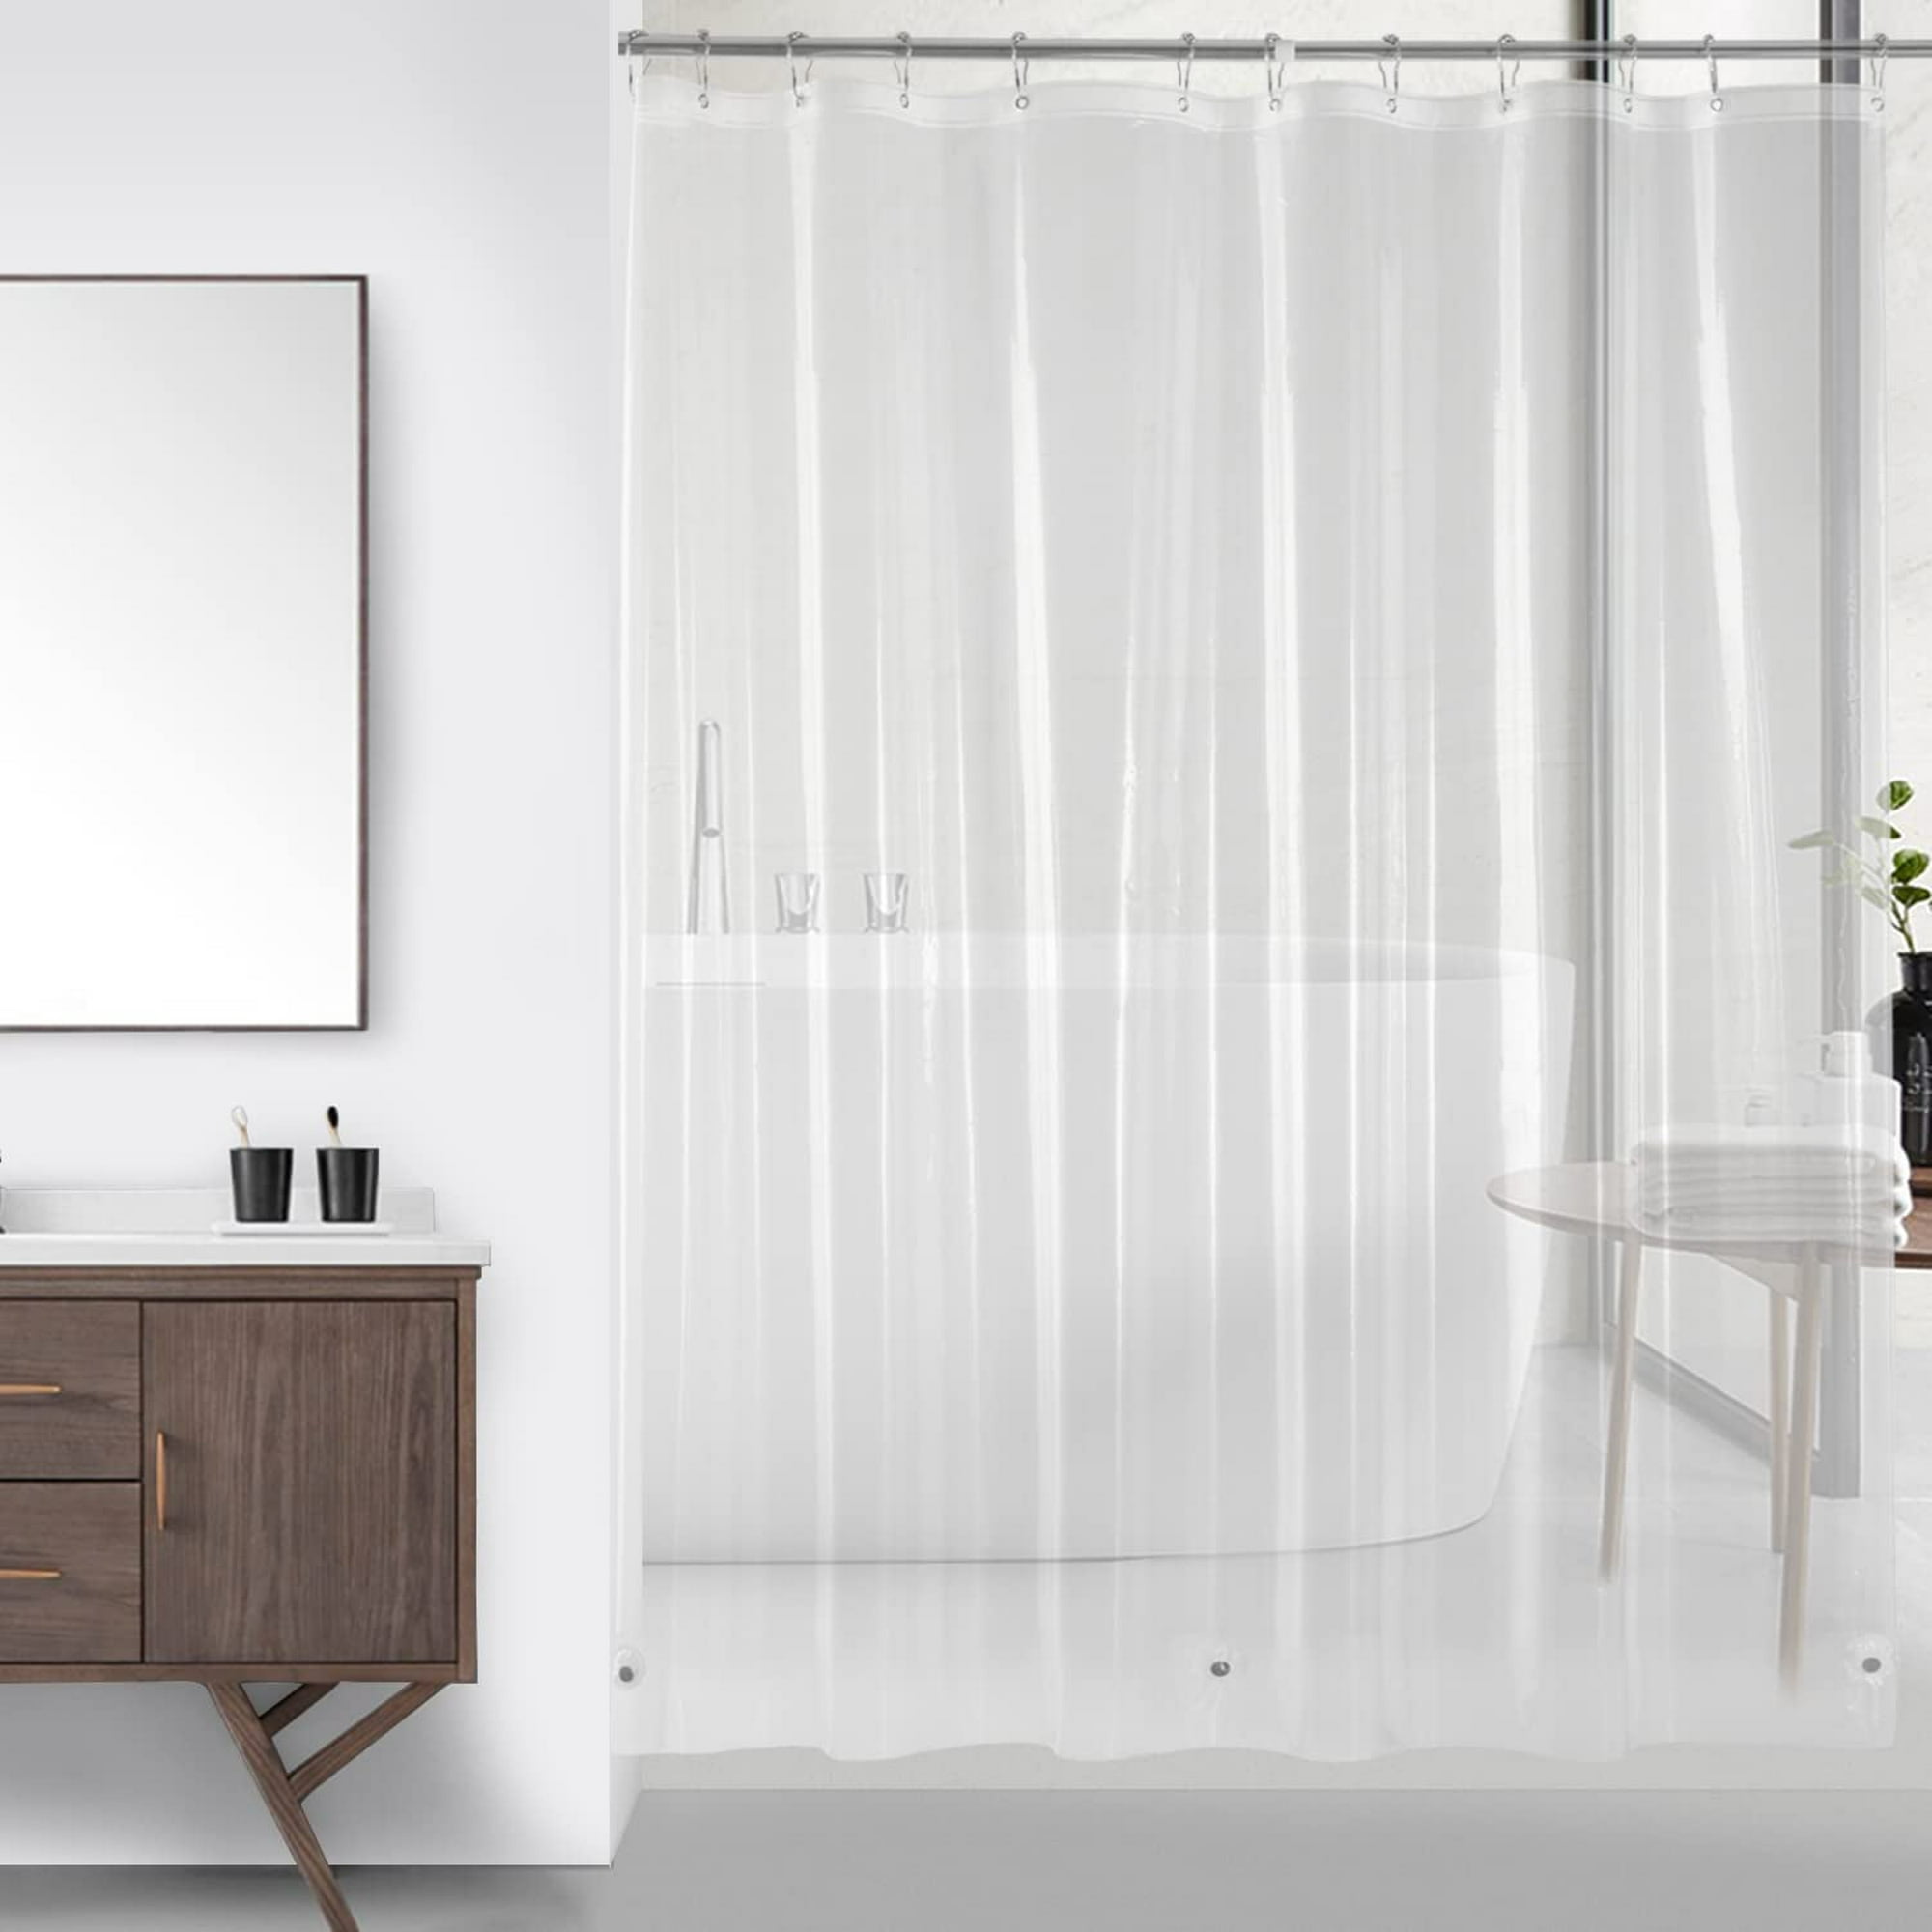 Cortina de ducha moderna minimalista blanca para baño, 71 x 71 pulgadas,  juego de cortinas de ducha de tela transparente con 12 ganchos